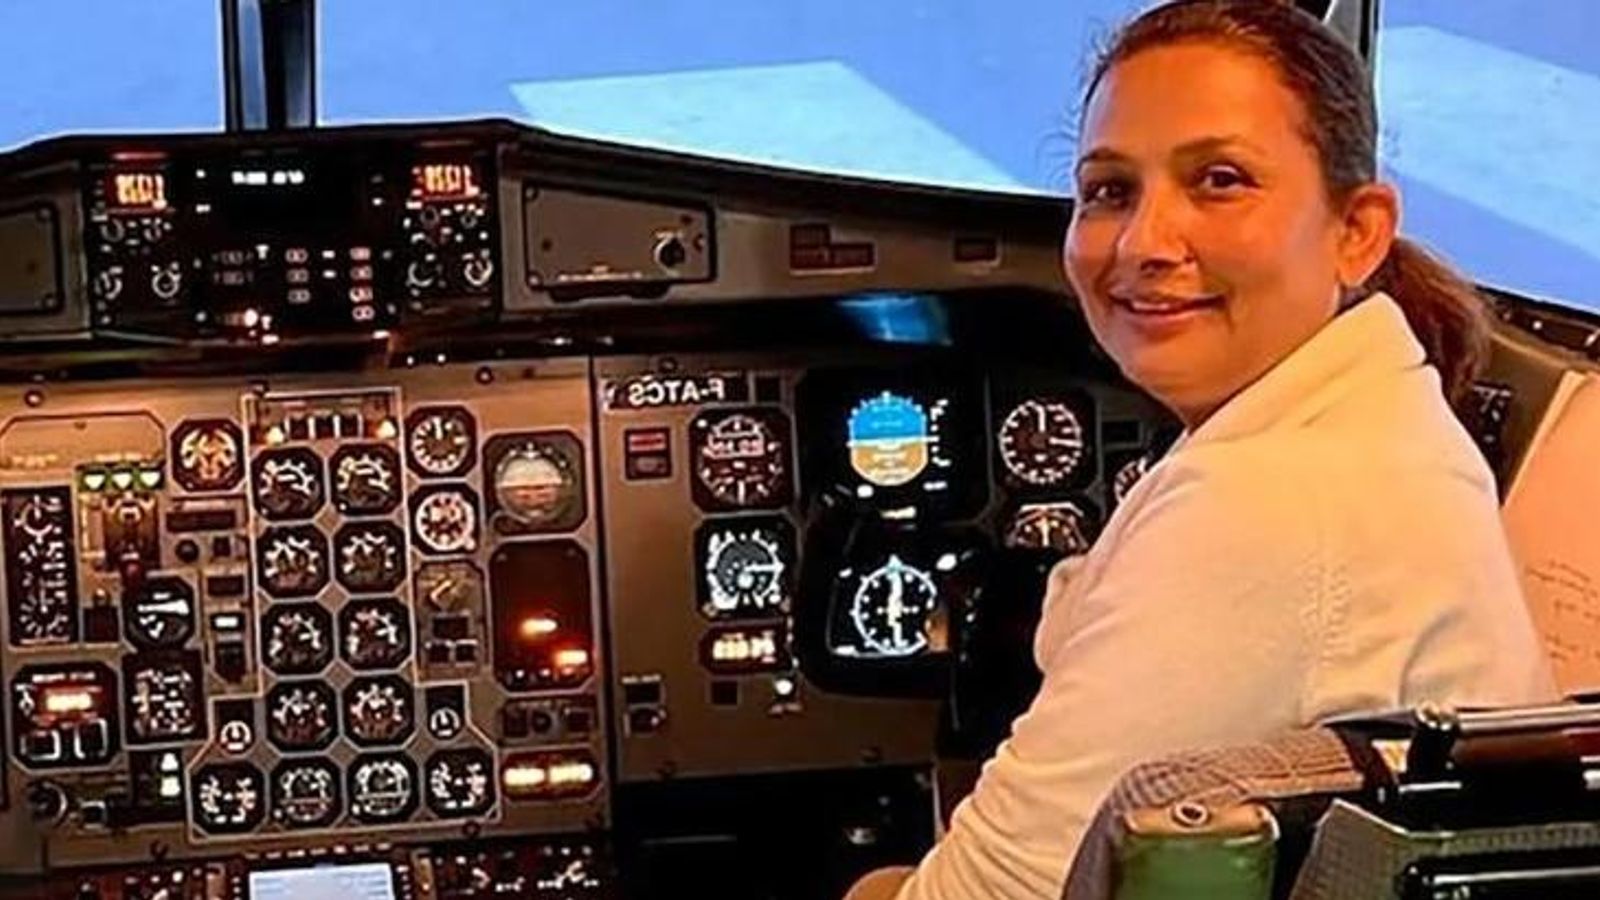 ネパールでの飛行機墜落事故: 副操縦士の夫が 16 年前のイエティ飛行事故で死亡 | 世界のニュース